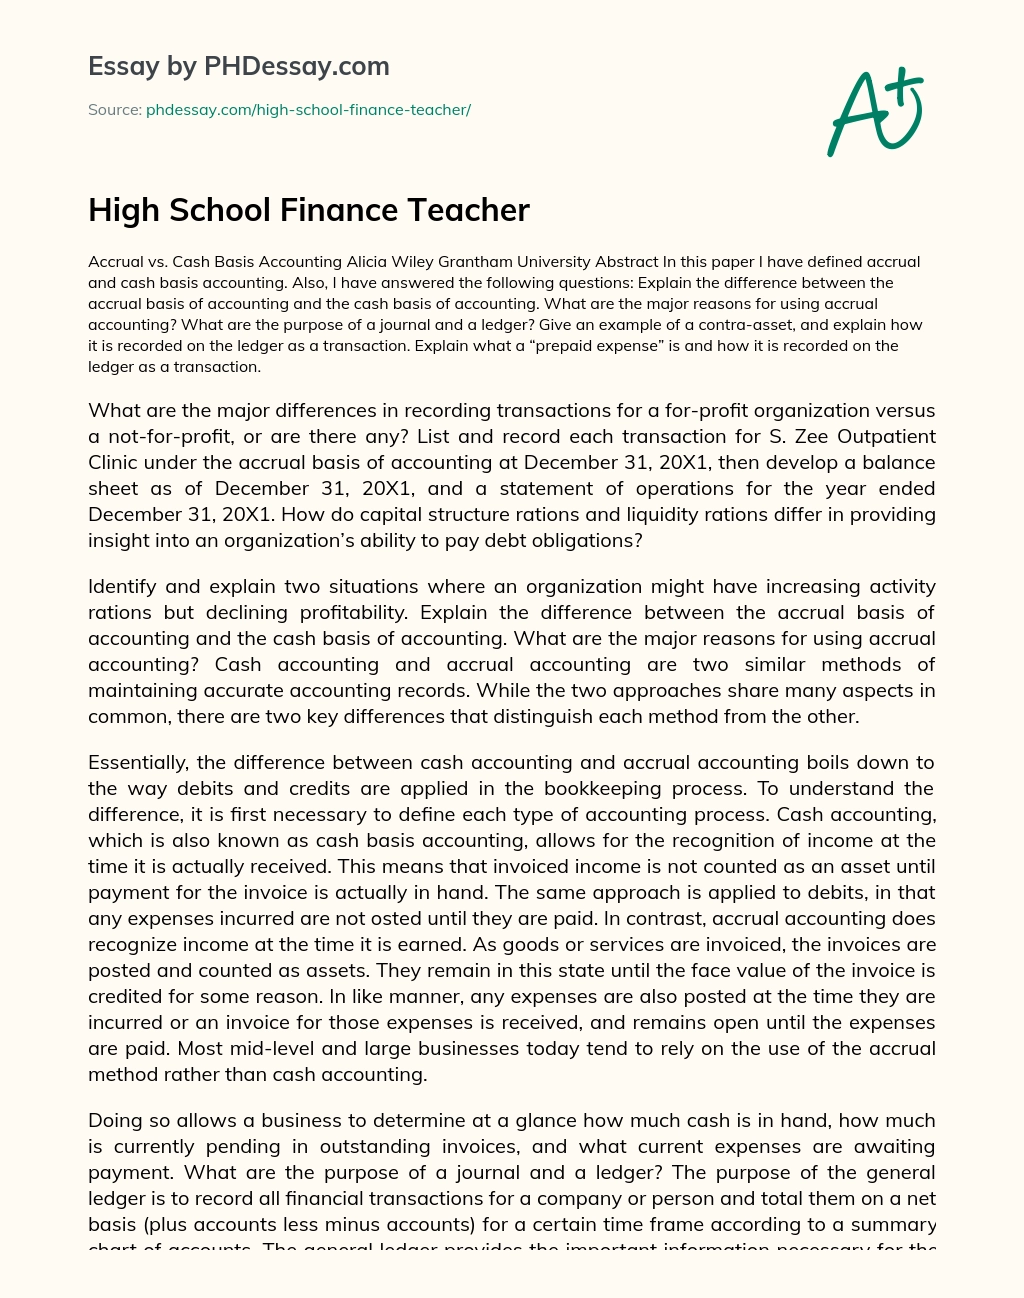 High School Finance Teacher essay